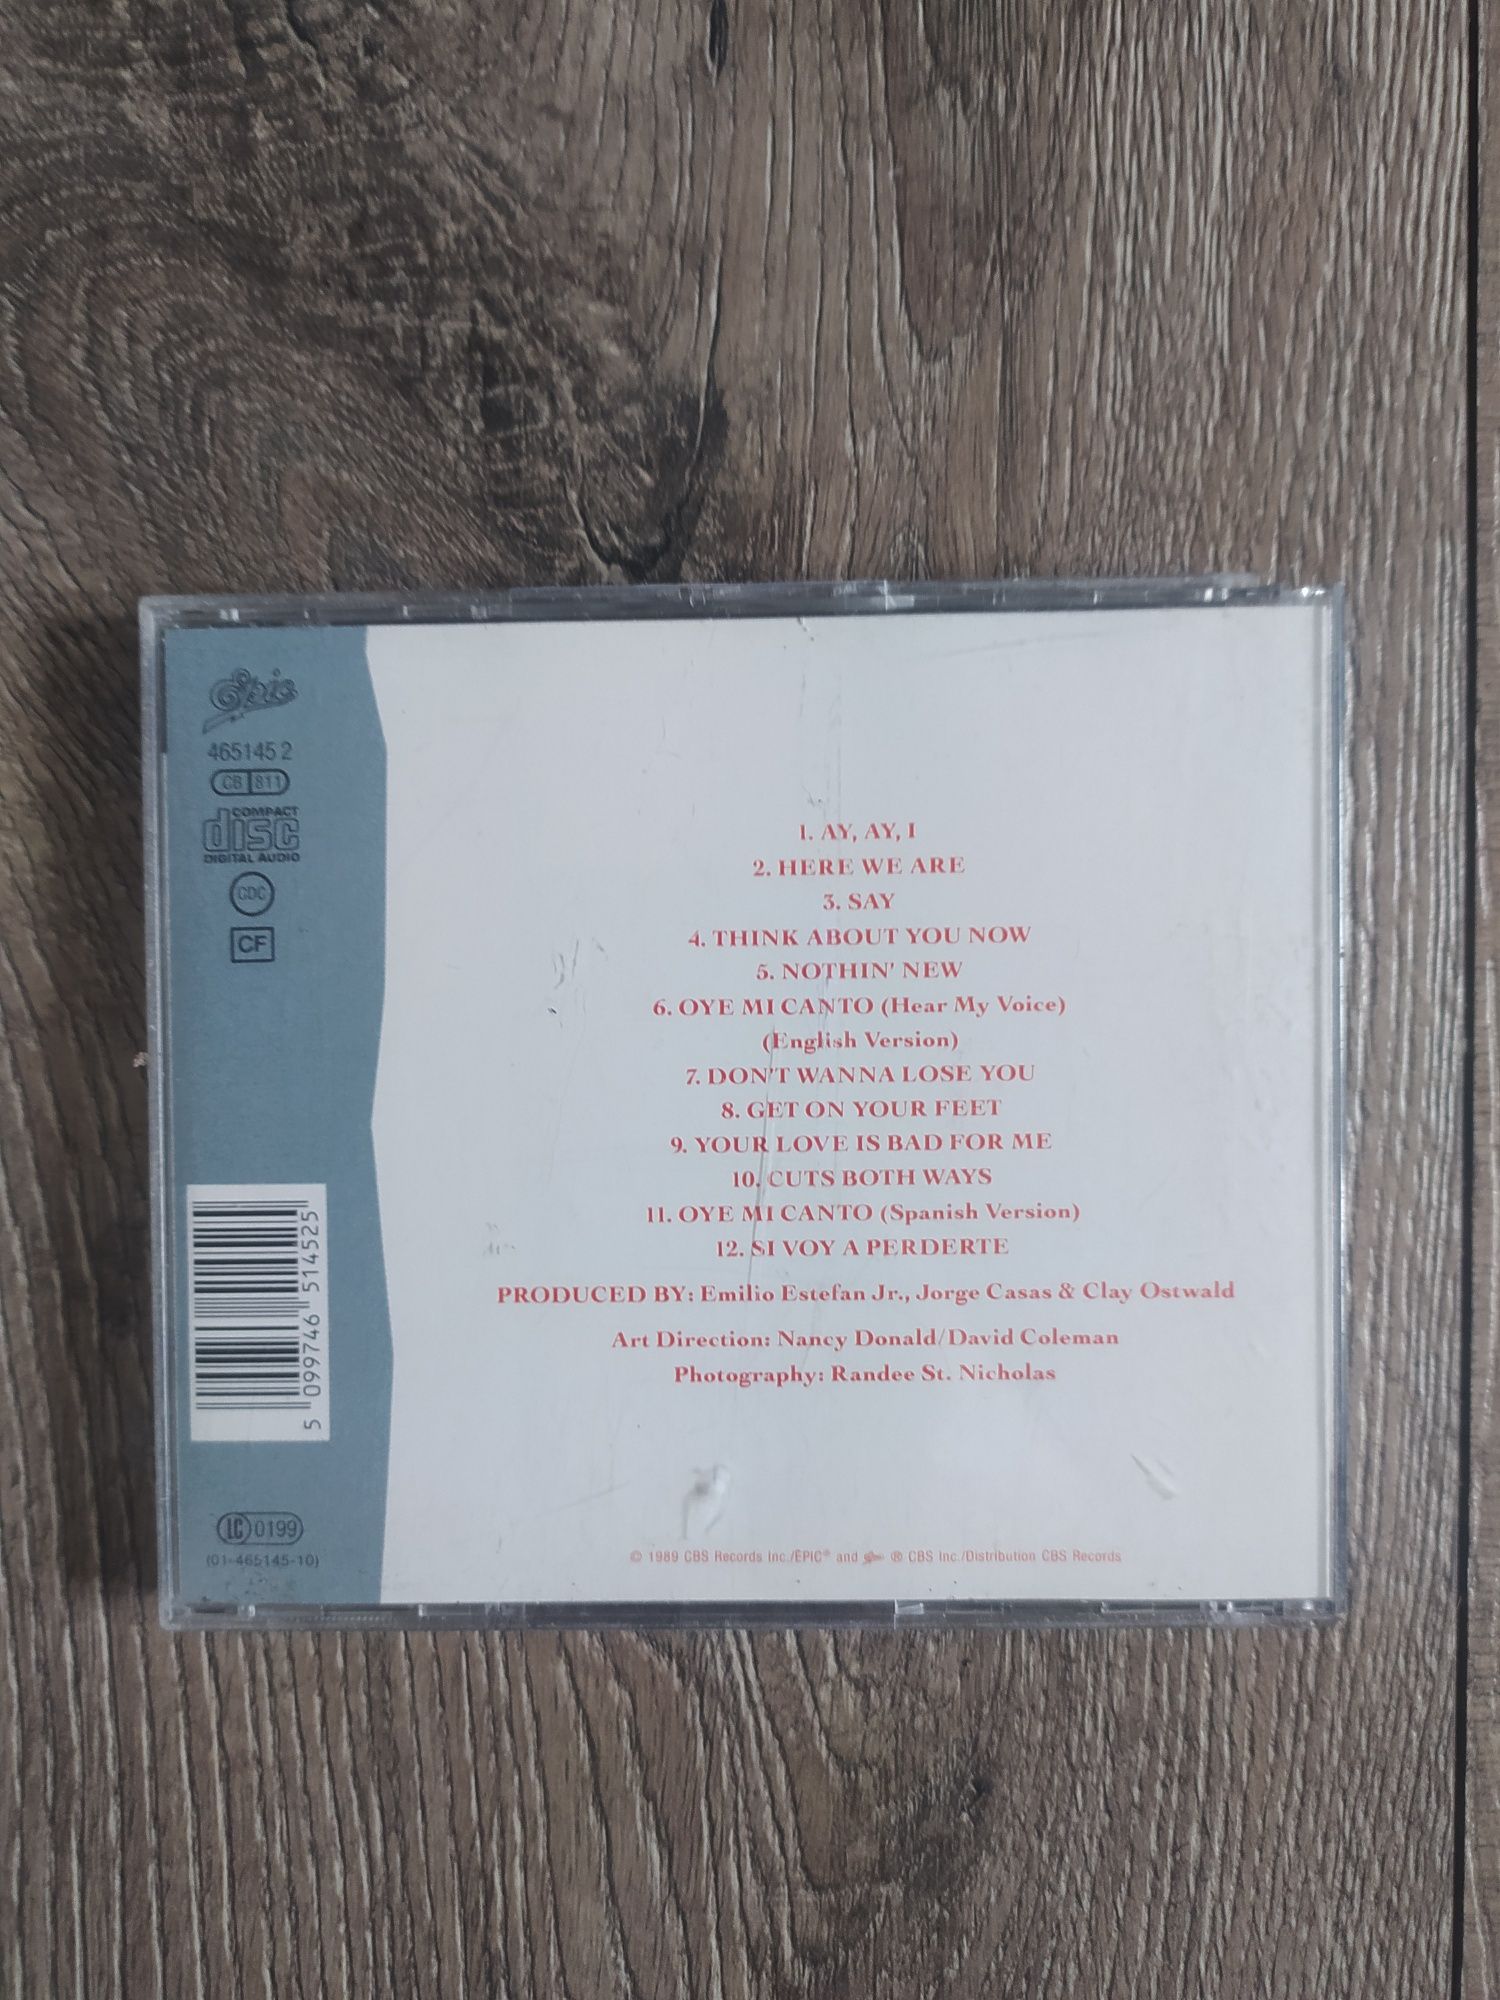 Płyta CD Gloria Estefan Cuts both ways Wysyłka